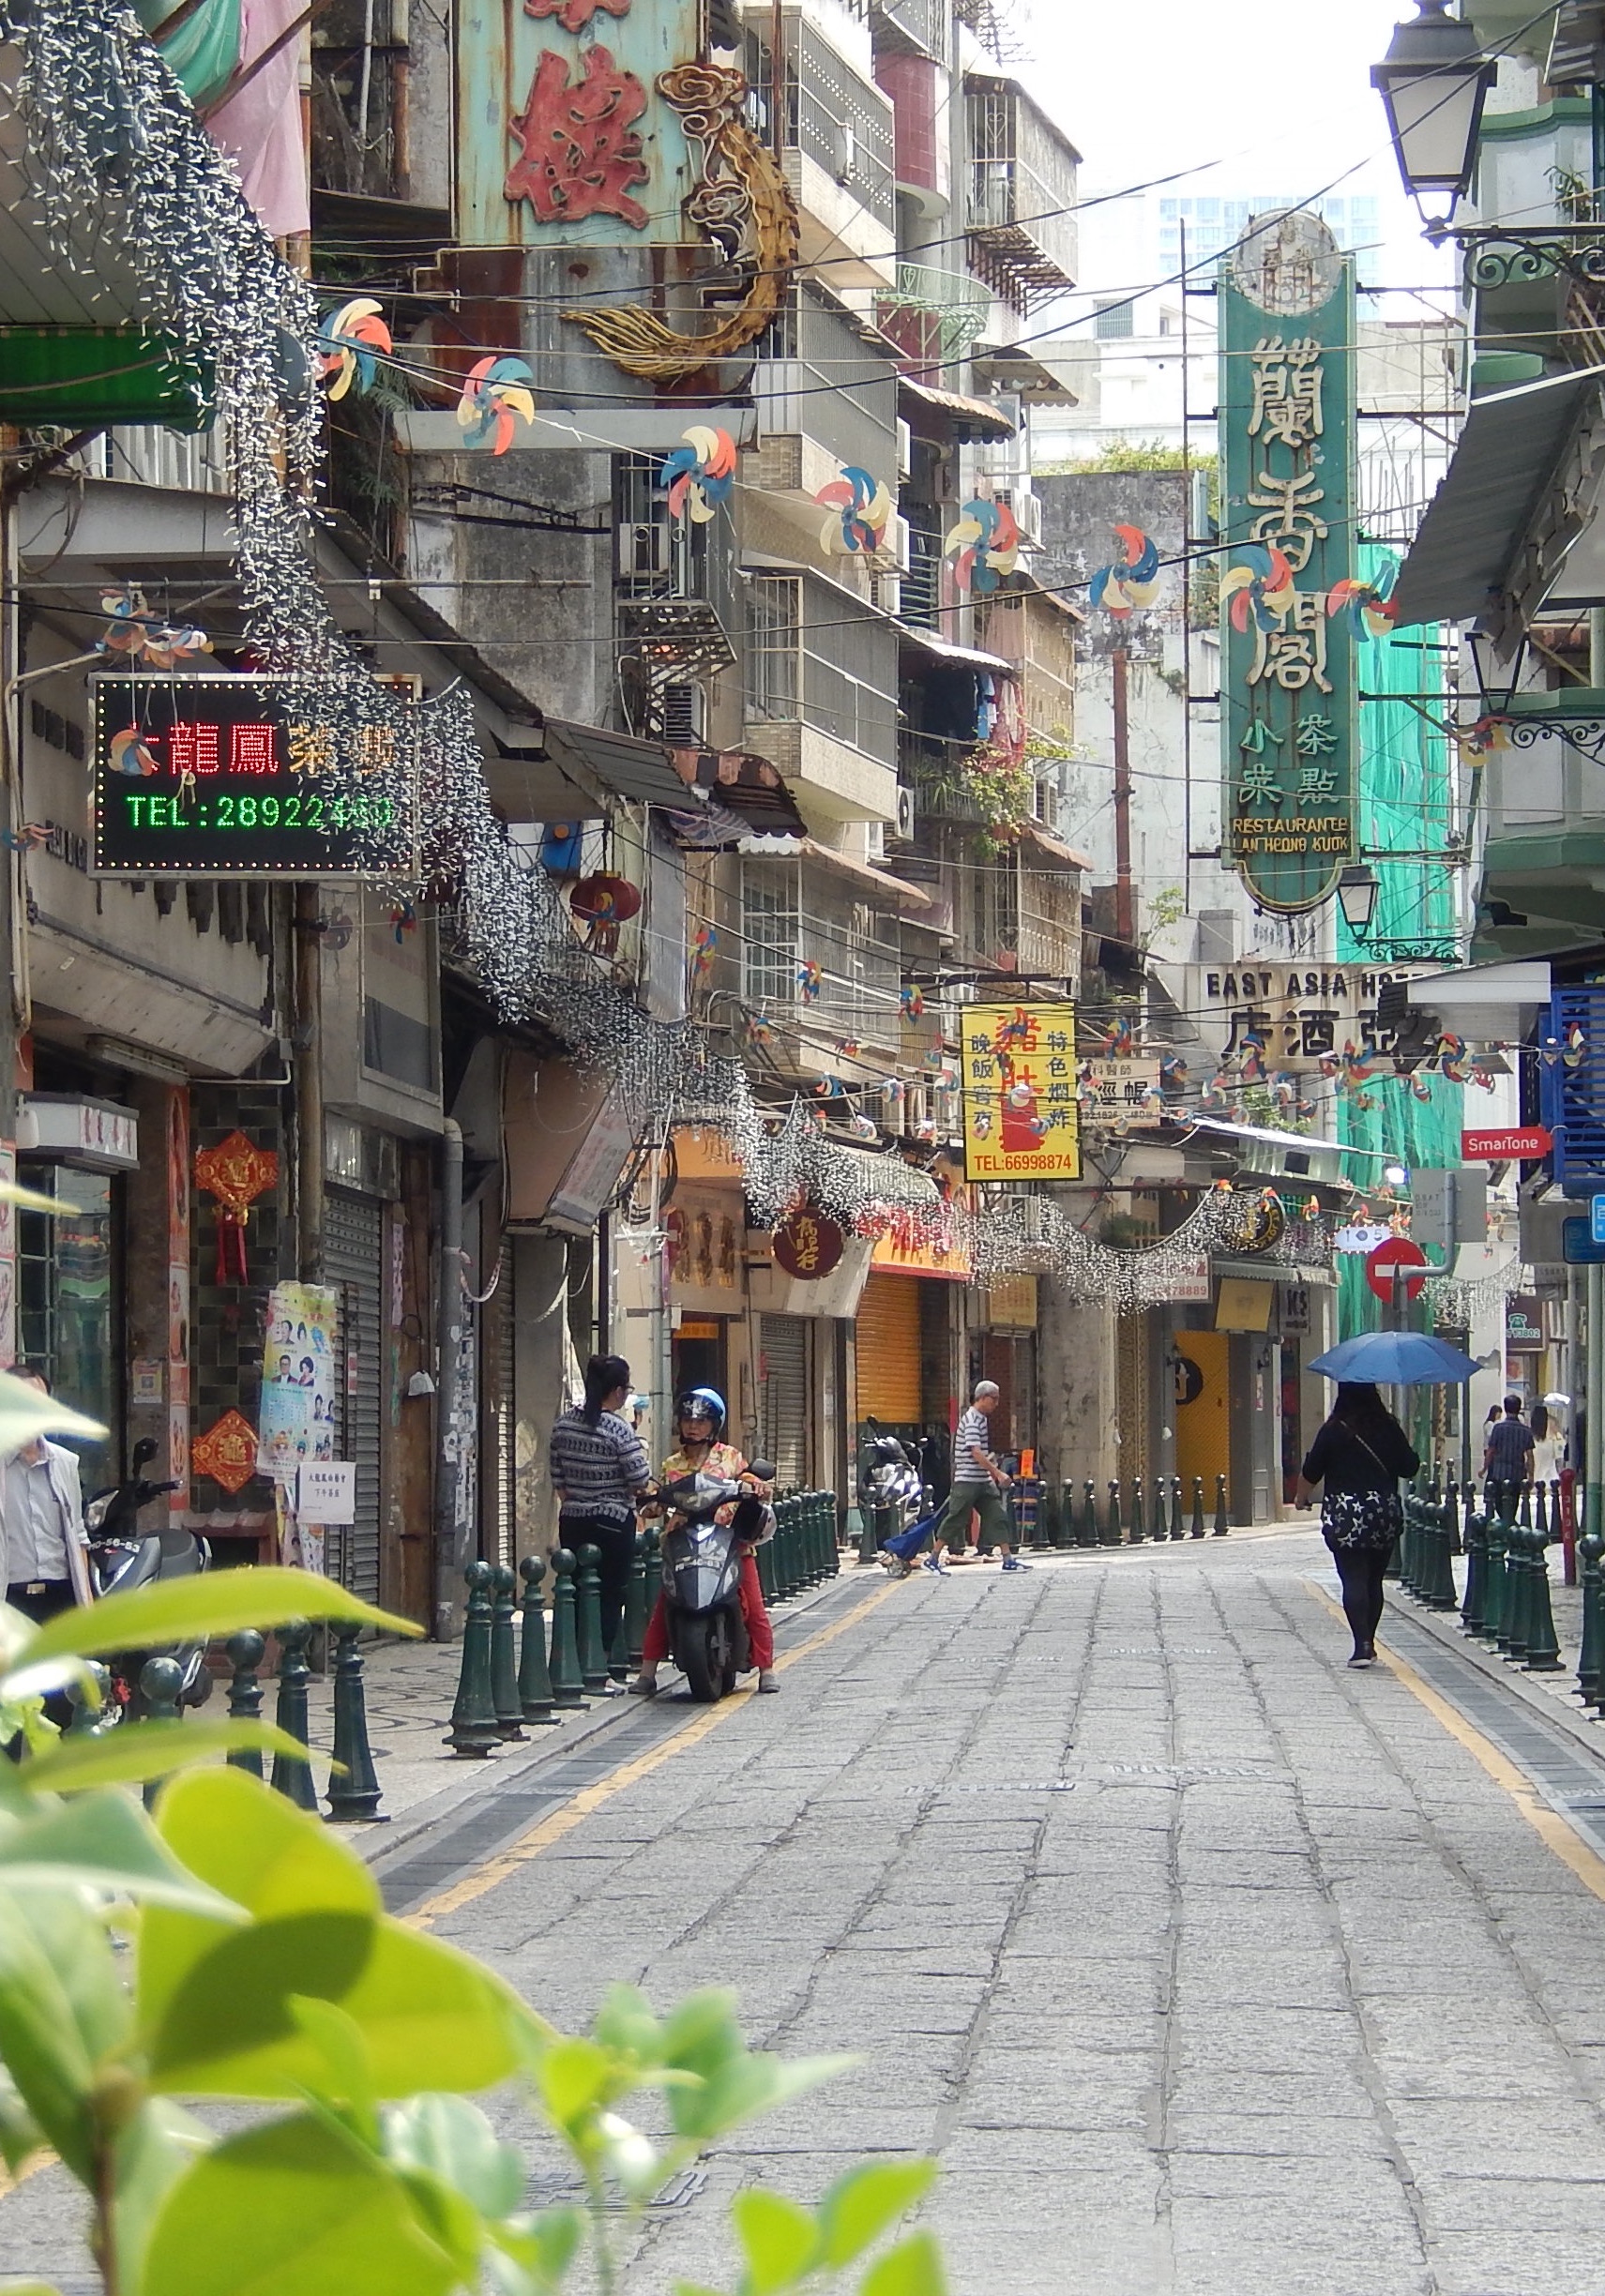 Macau back alley copy.jpg